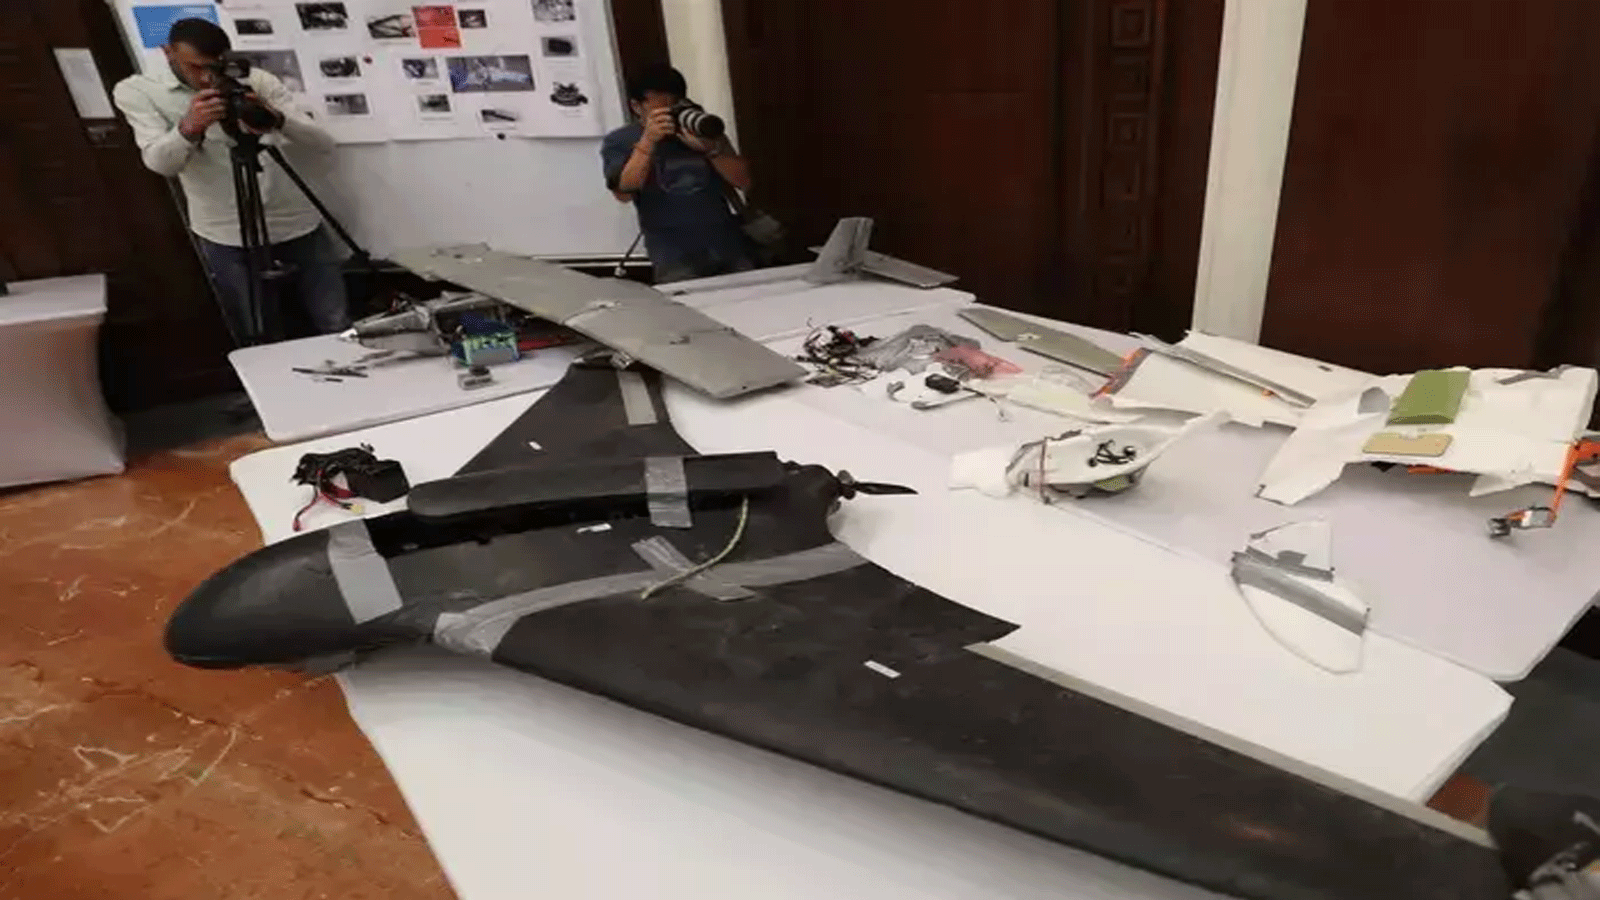 صورة التُقِطَت في 19 يونيو / حزيران 2018 في أبو ظبي تُظهر طائرة بدون طيار للقوات المسلحة الإماراتية تقول إن الحوثيين استخدموها في اليمن في معارك ضد قوات التحالف العربي.